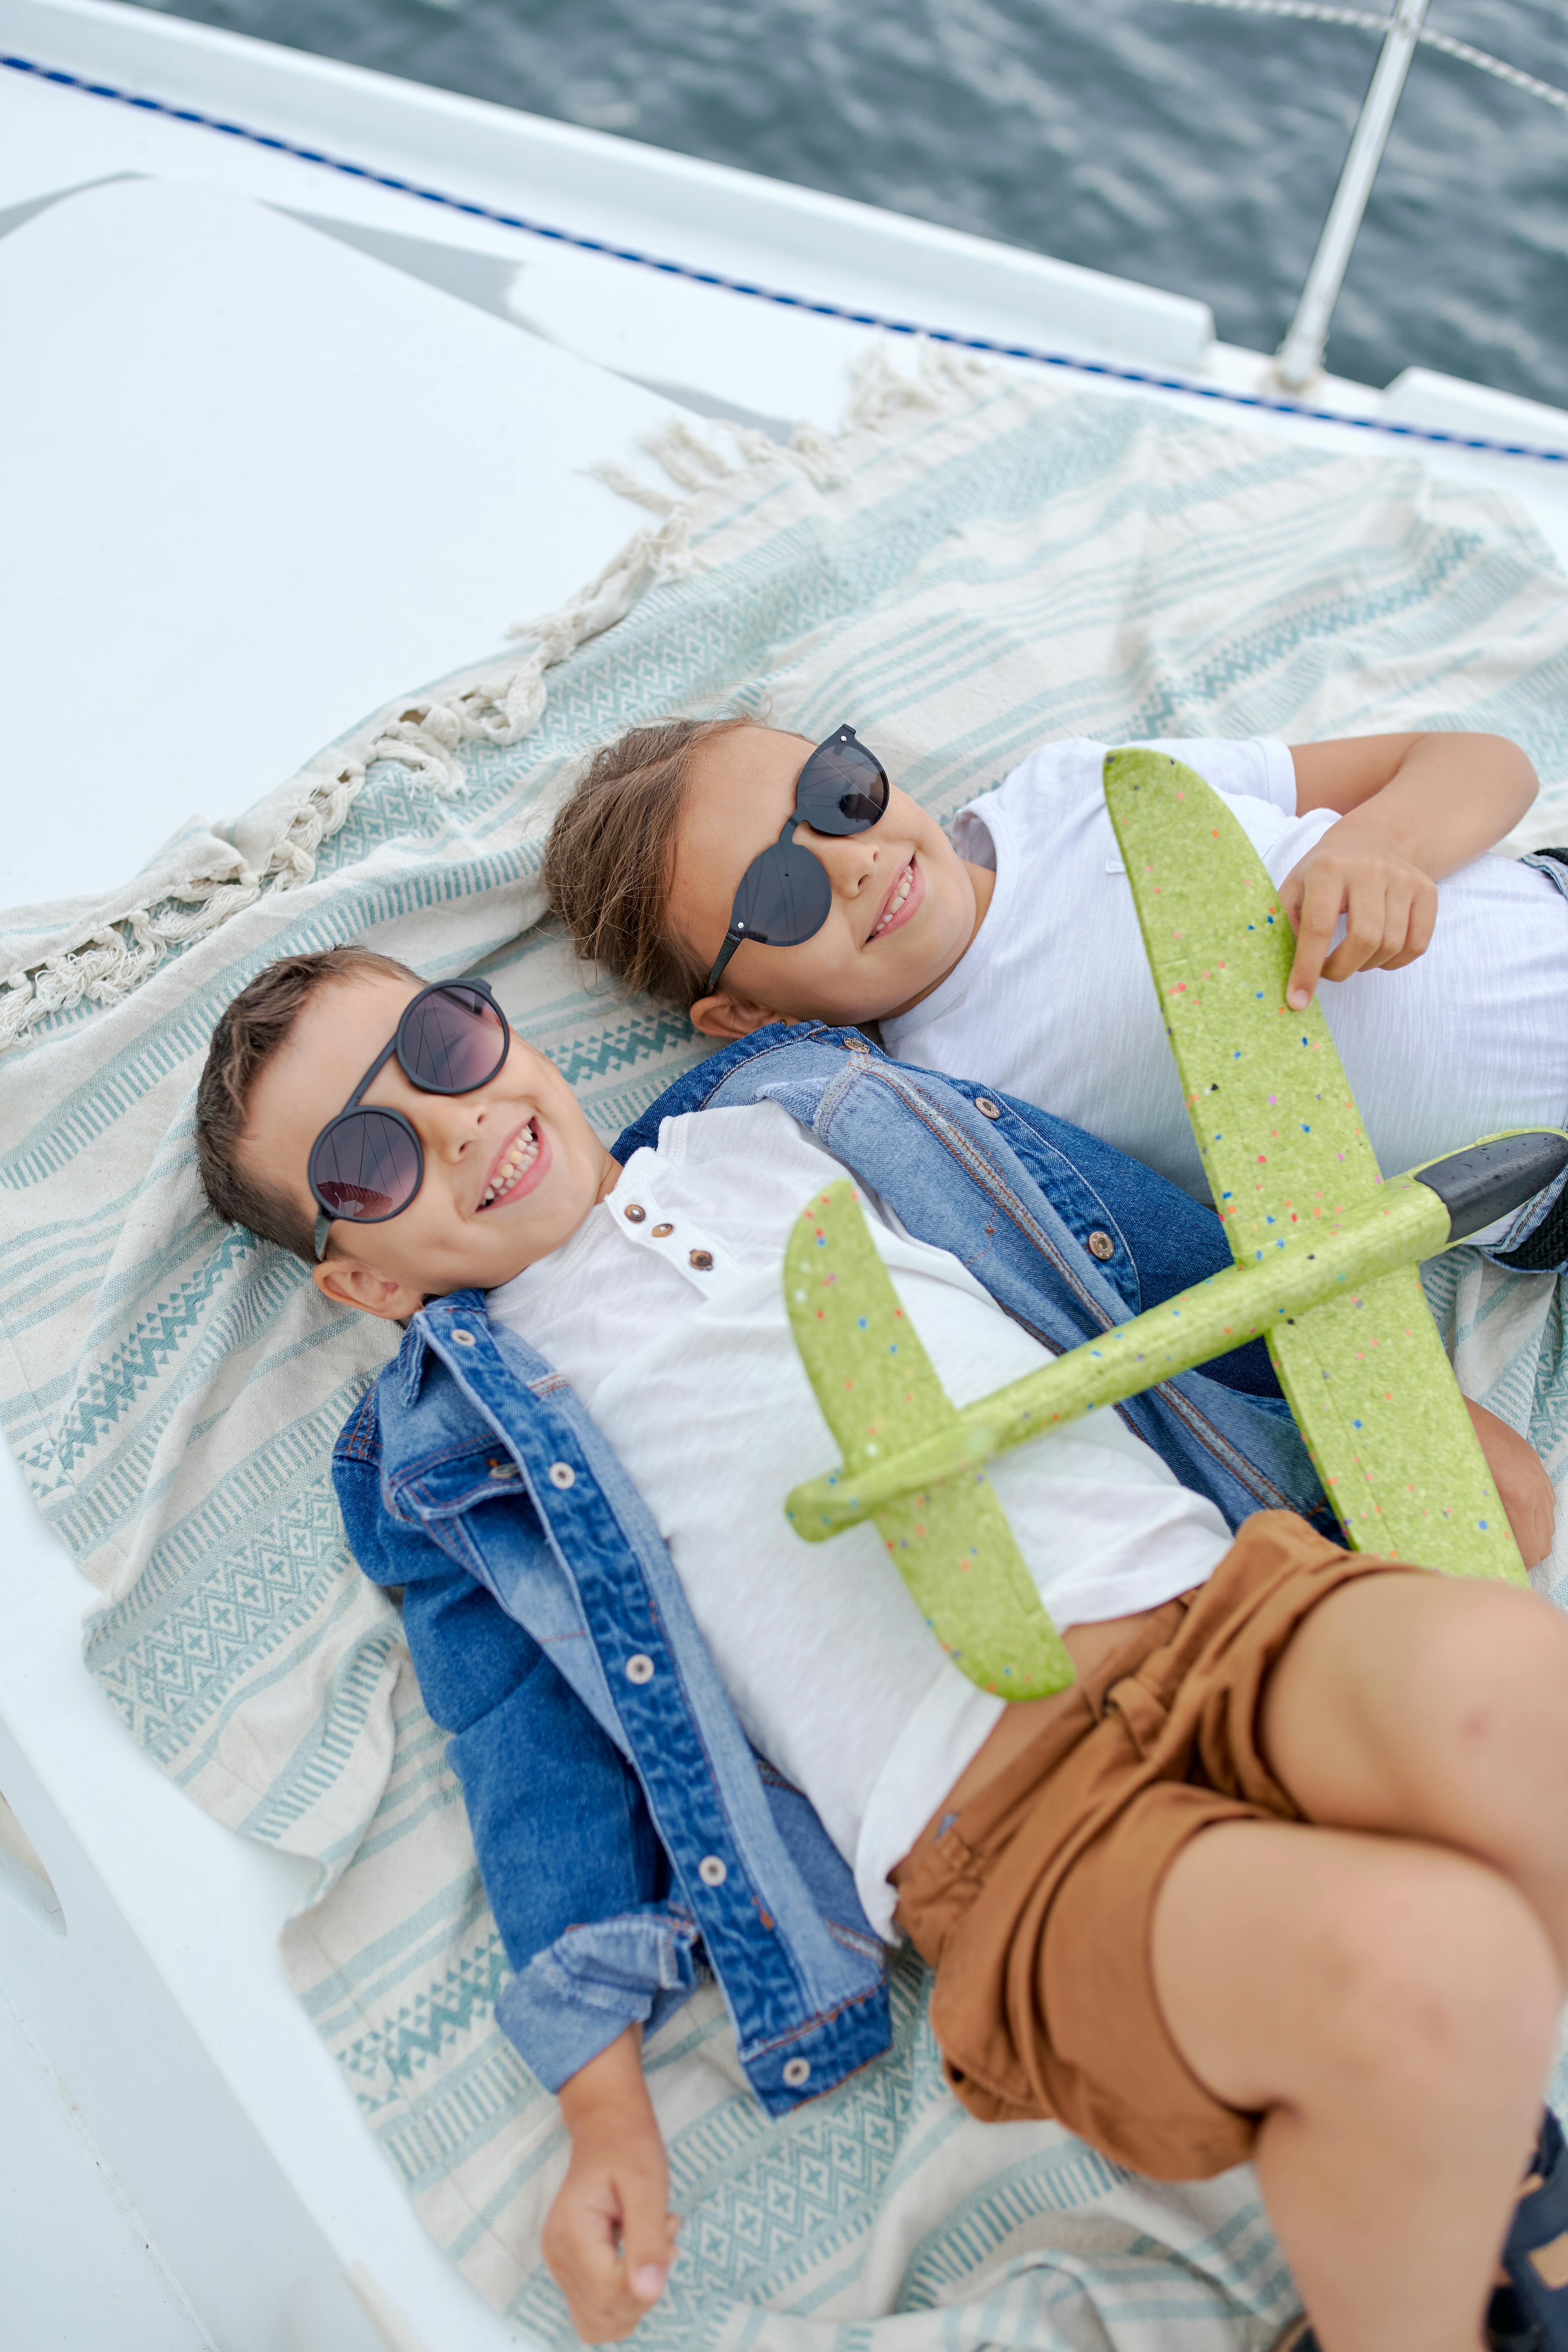 Zwei glückliche Kinder liegen mit dem Gesicht nach oben auf einem Boot und spielen mit einem Spielzeugflugzeug | Quelle: Pexels